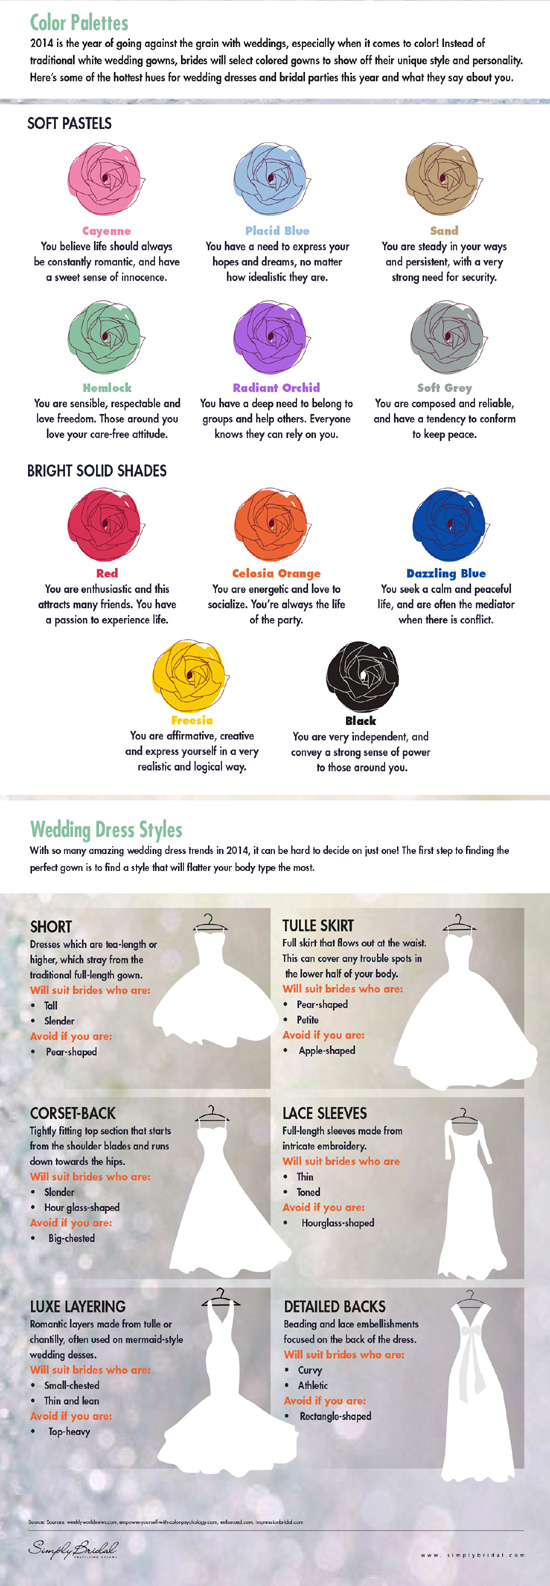 2014 Wedding Trends